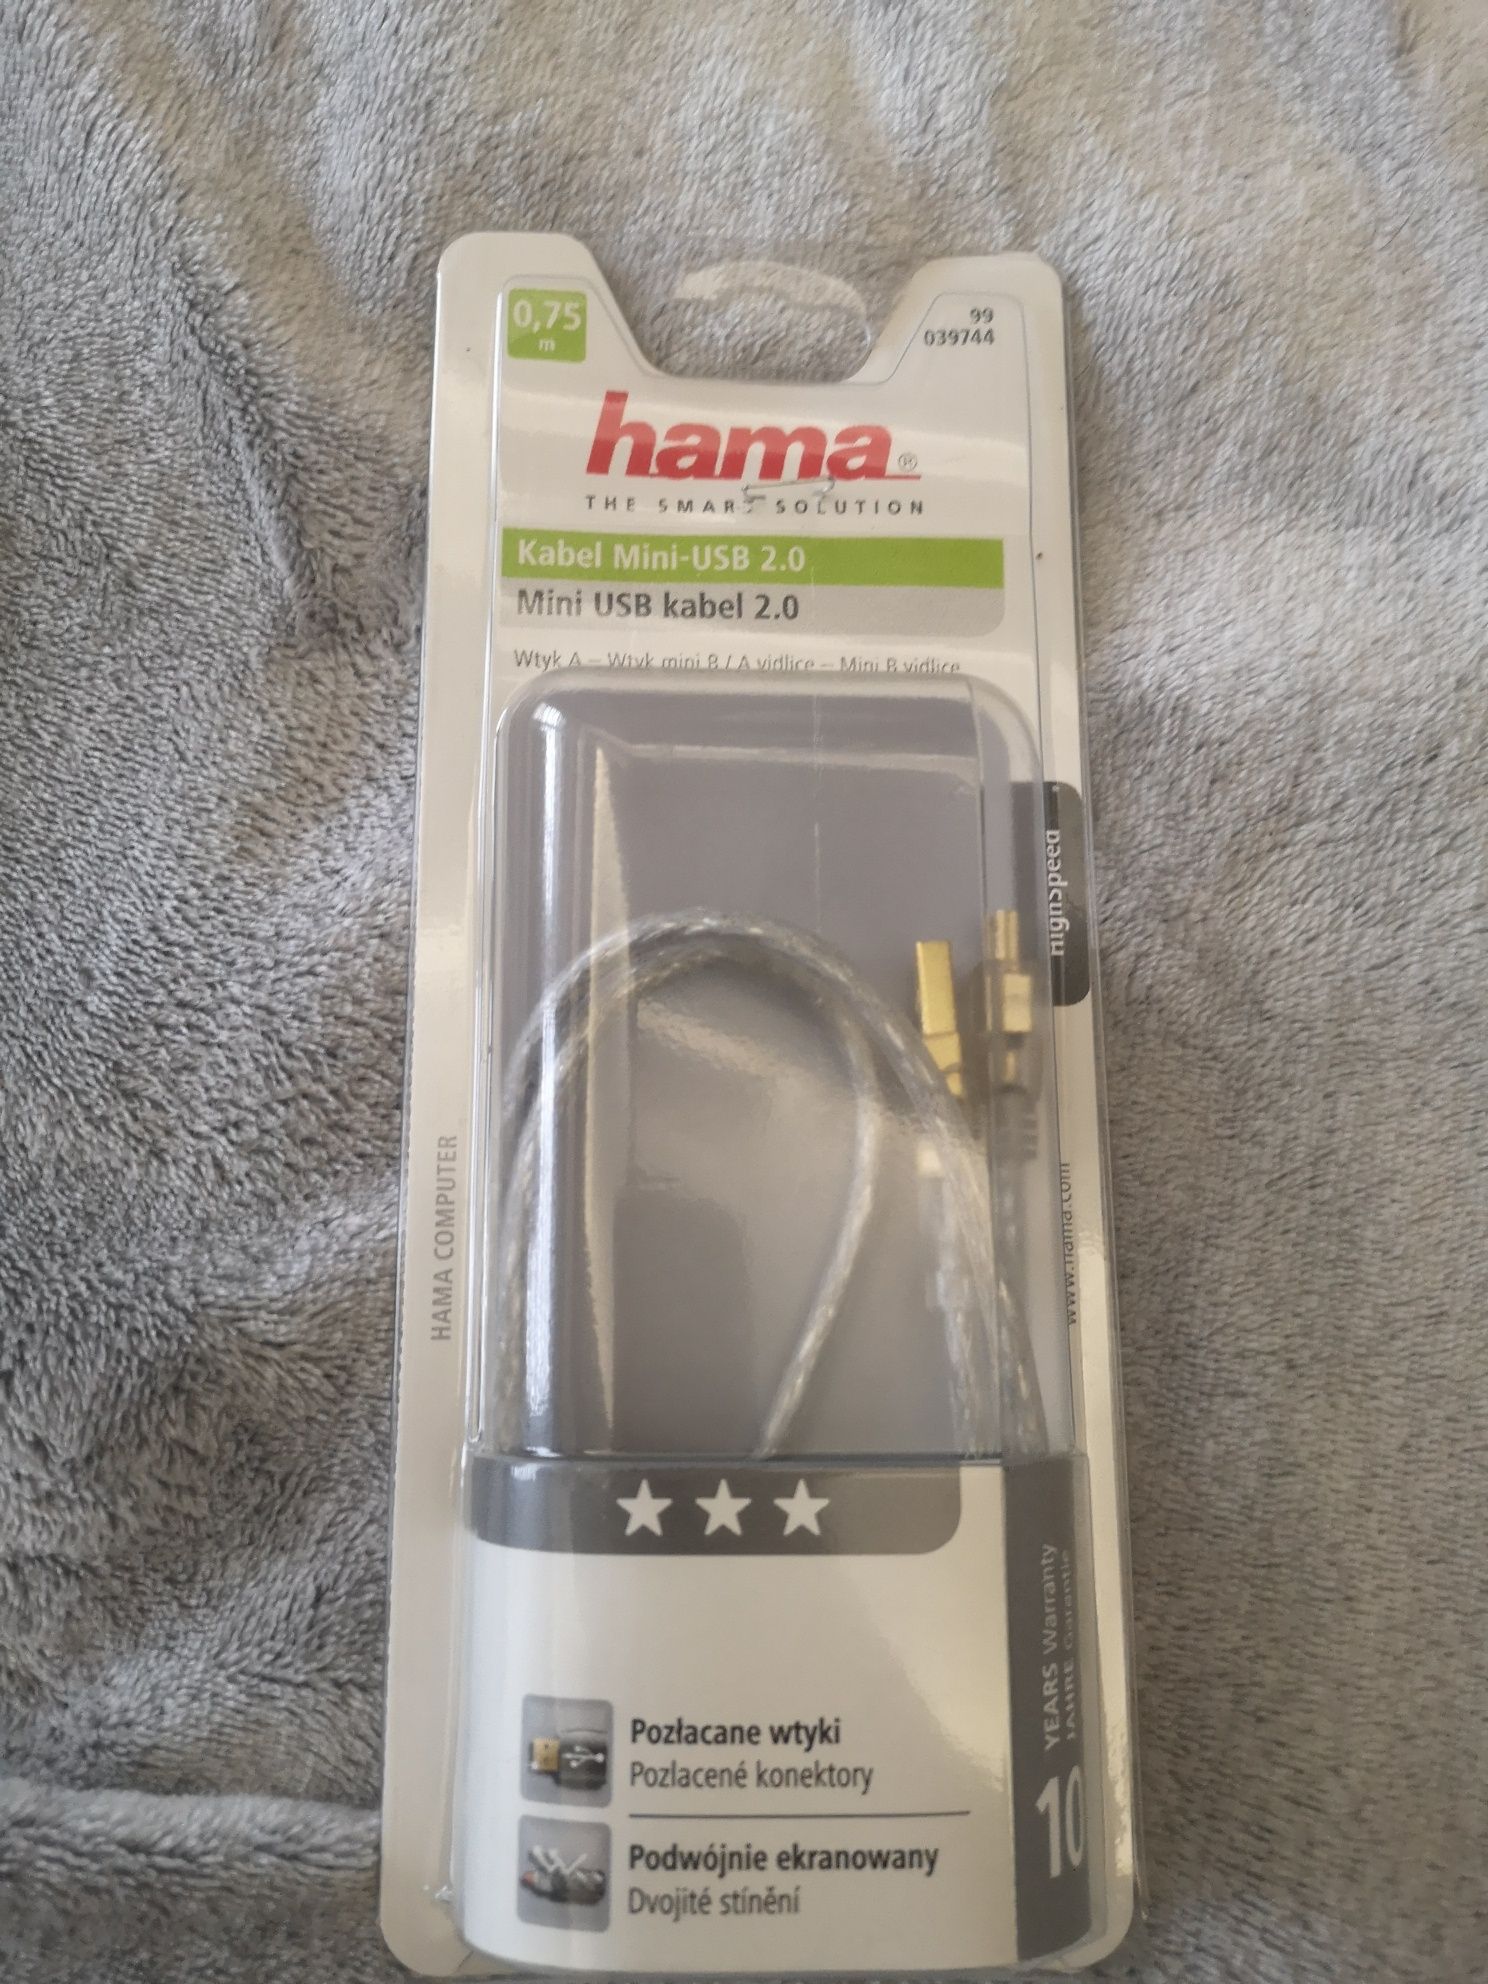 Kabel mini na USB, długość 75 cm, firma Hama